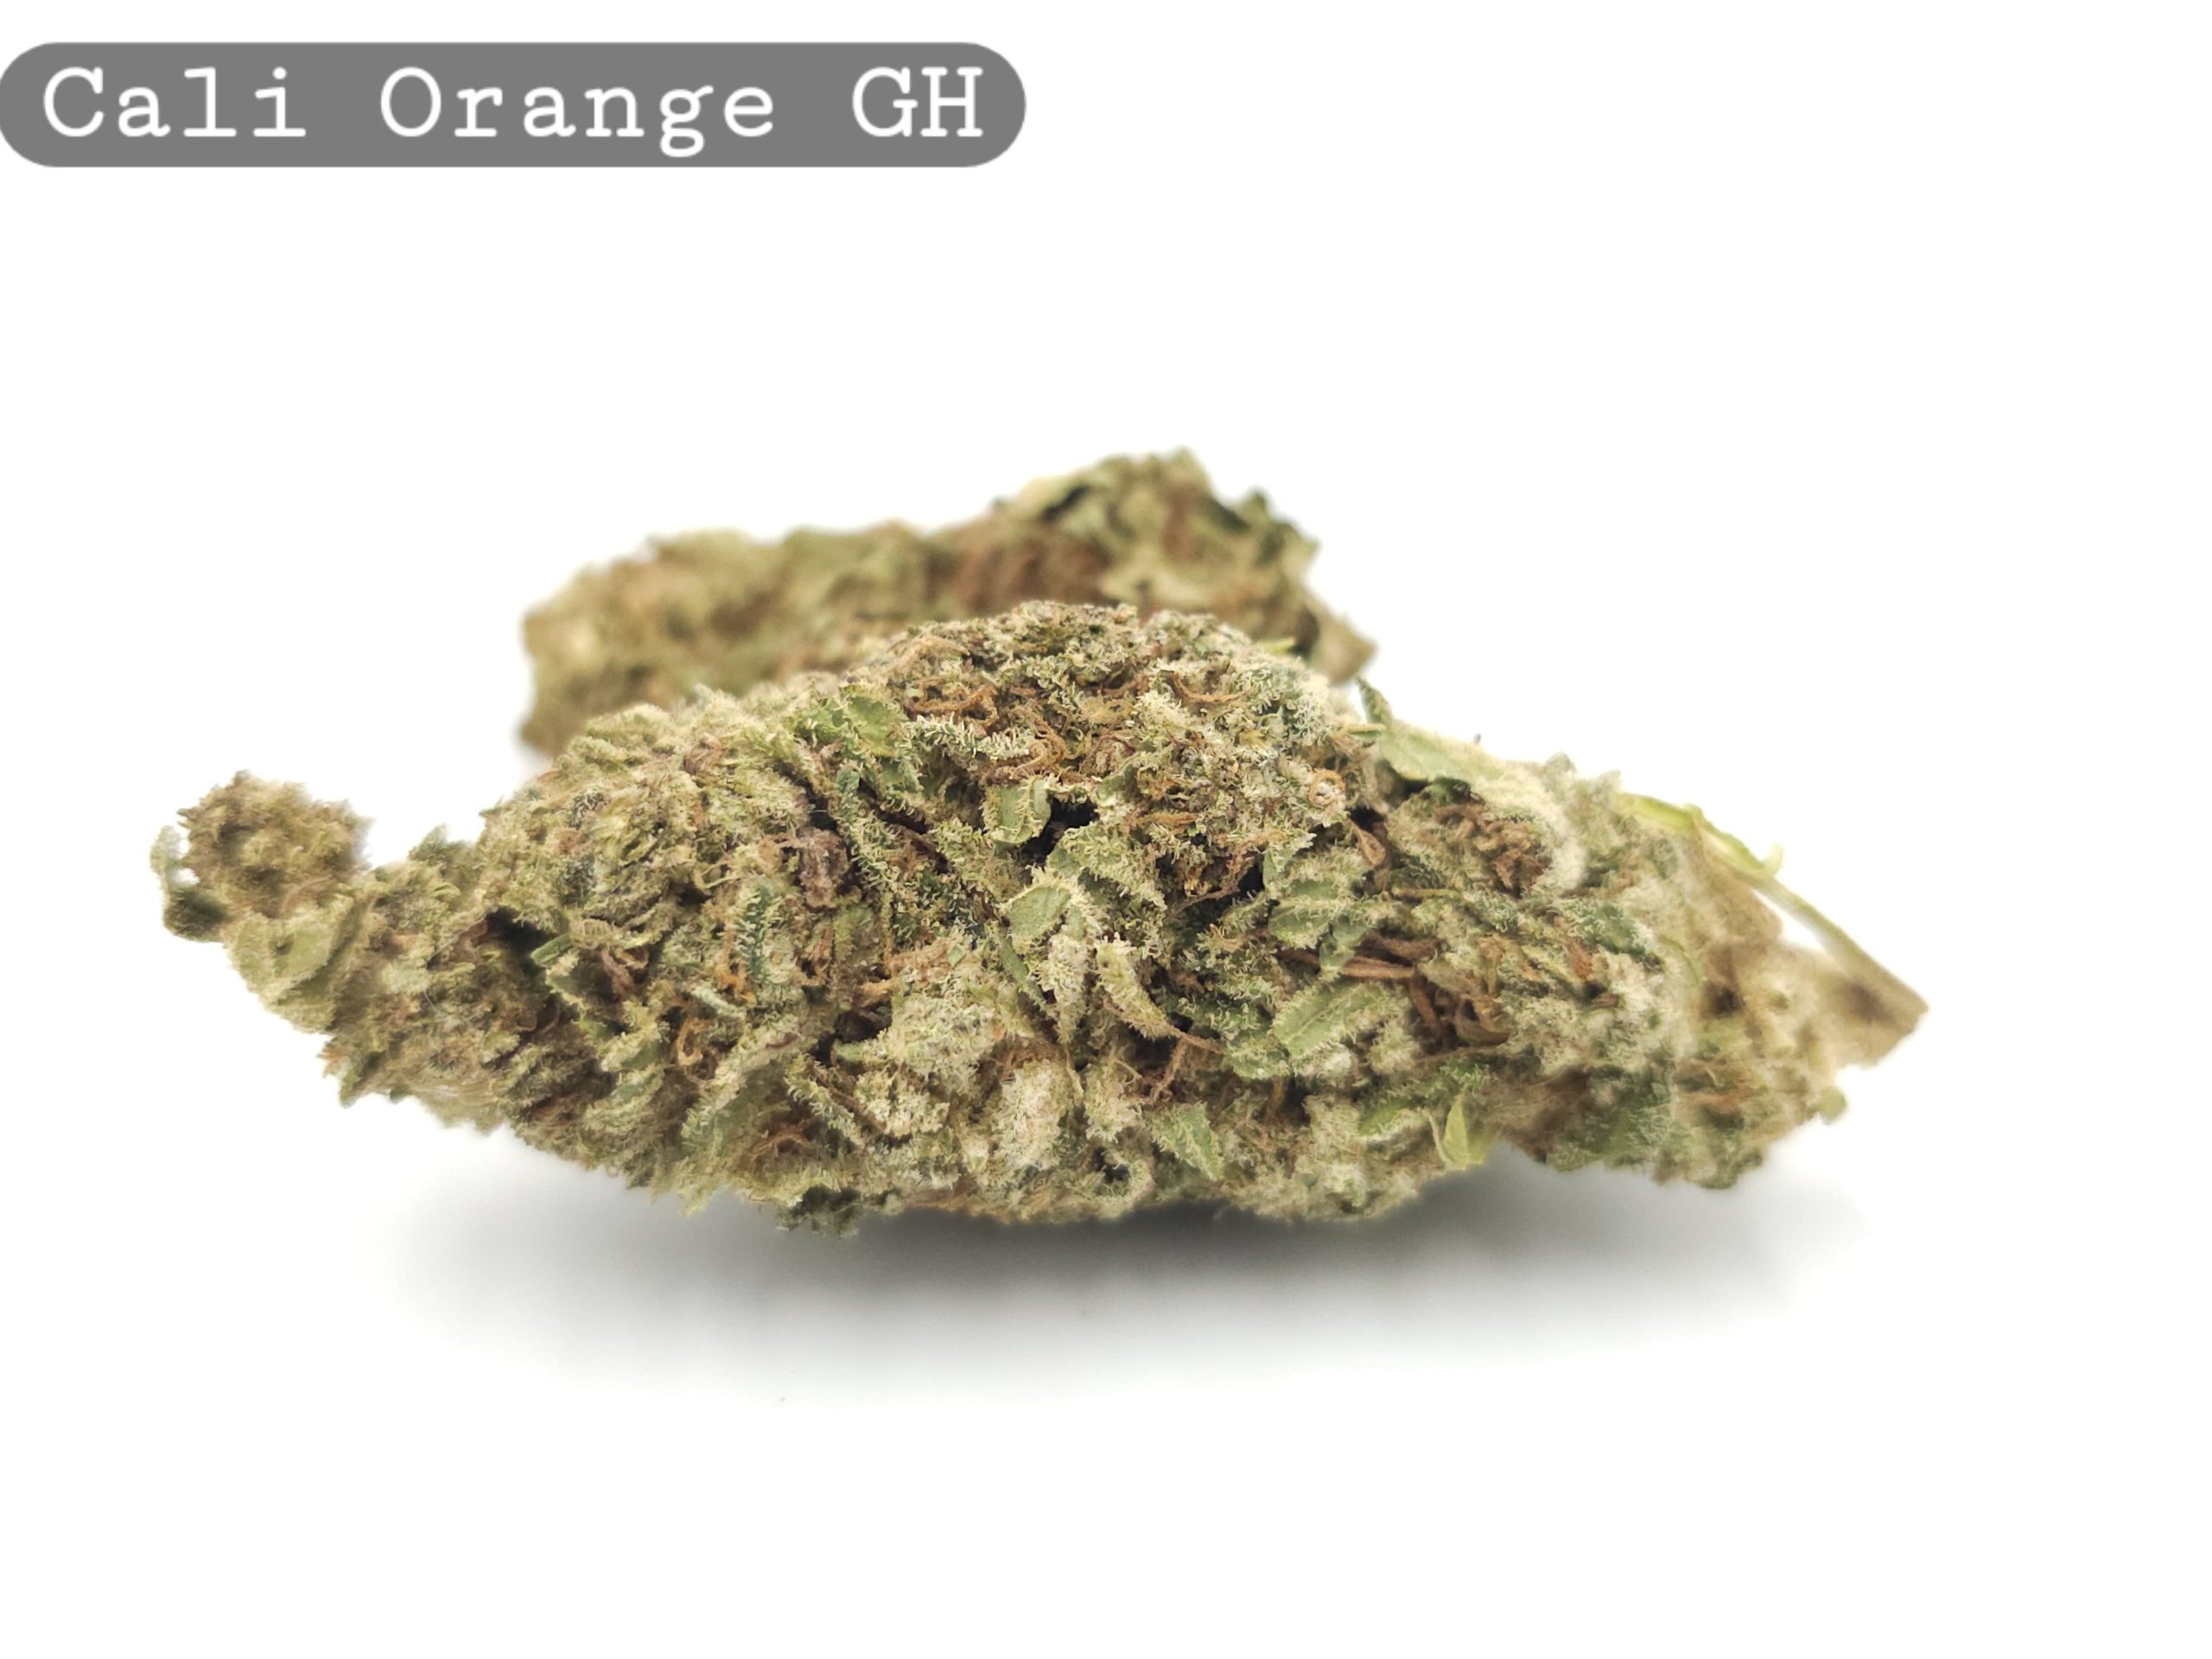 GreenHouse Cali Orange per 2g_Cannabis Bud_The dope warehouse